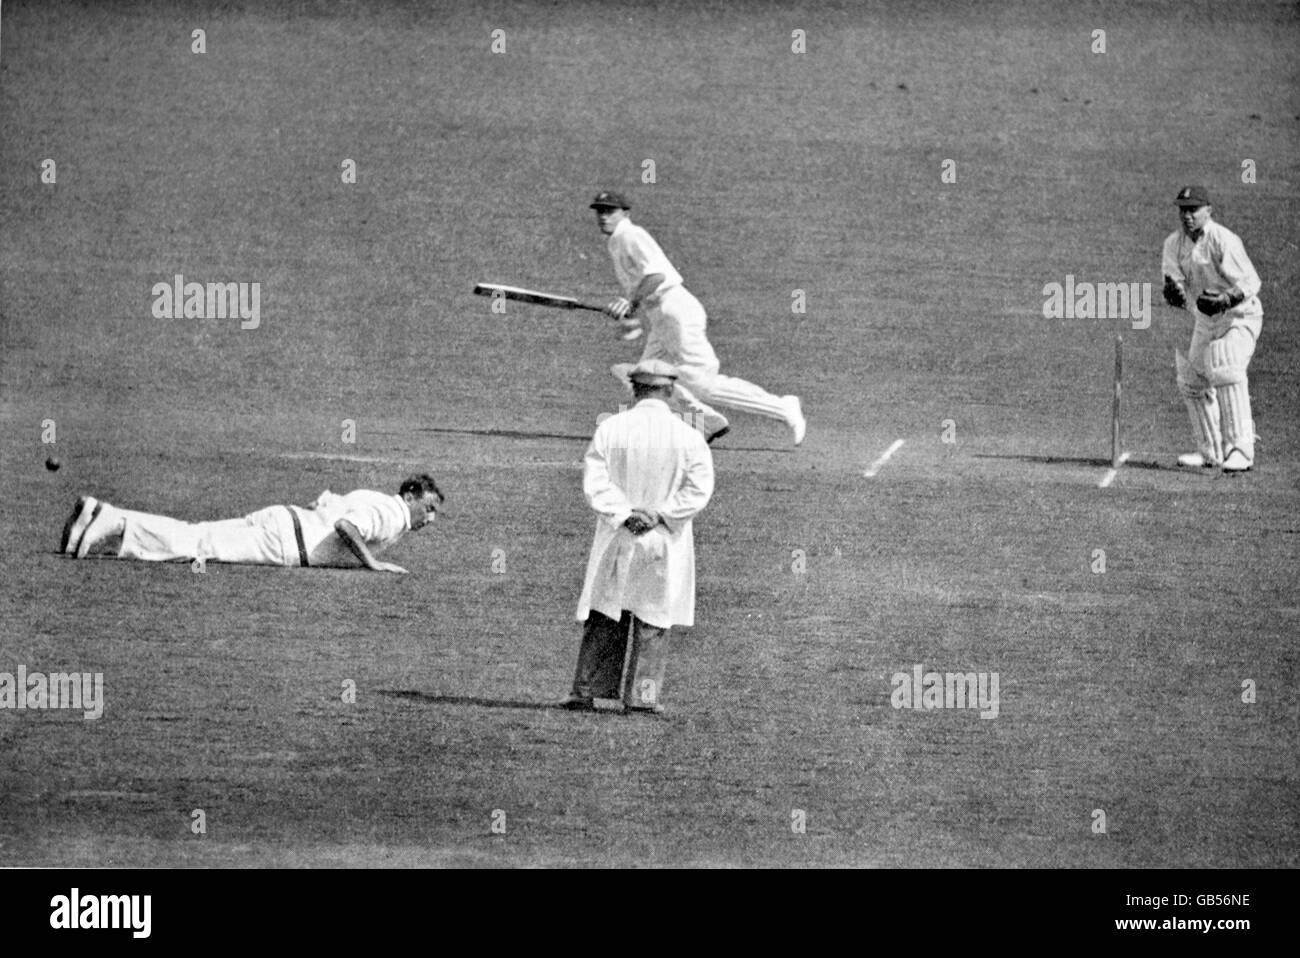 Il Don Bradman (c) dell'Australia aggancia la palla a Maurice Tate (l) dell'Inghilterra, guardato dal wicketkeeper George Duckworth (r) Foto Stock